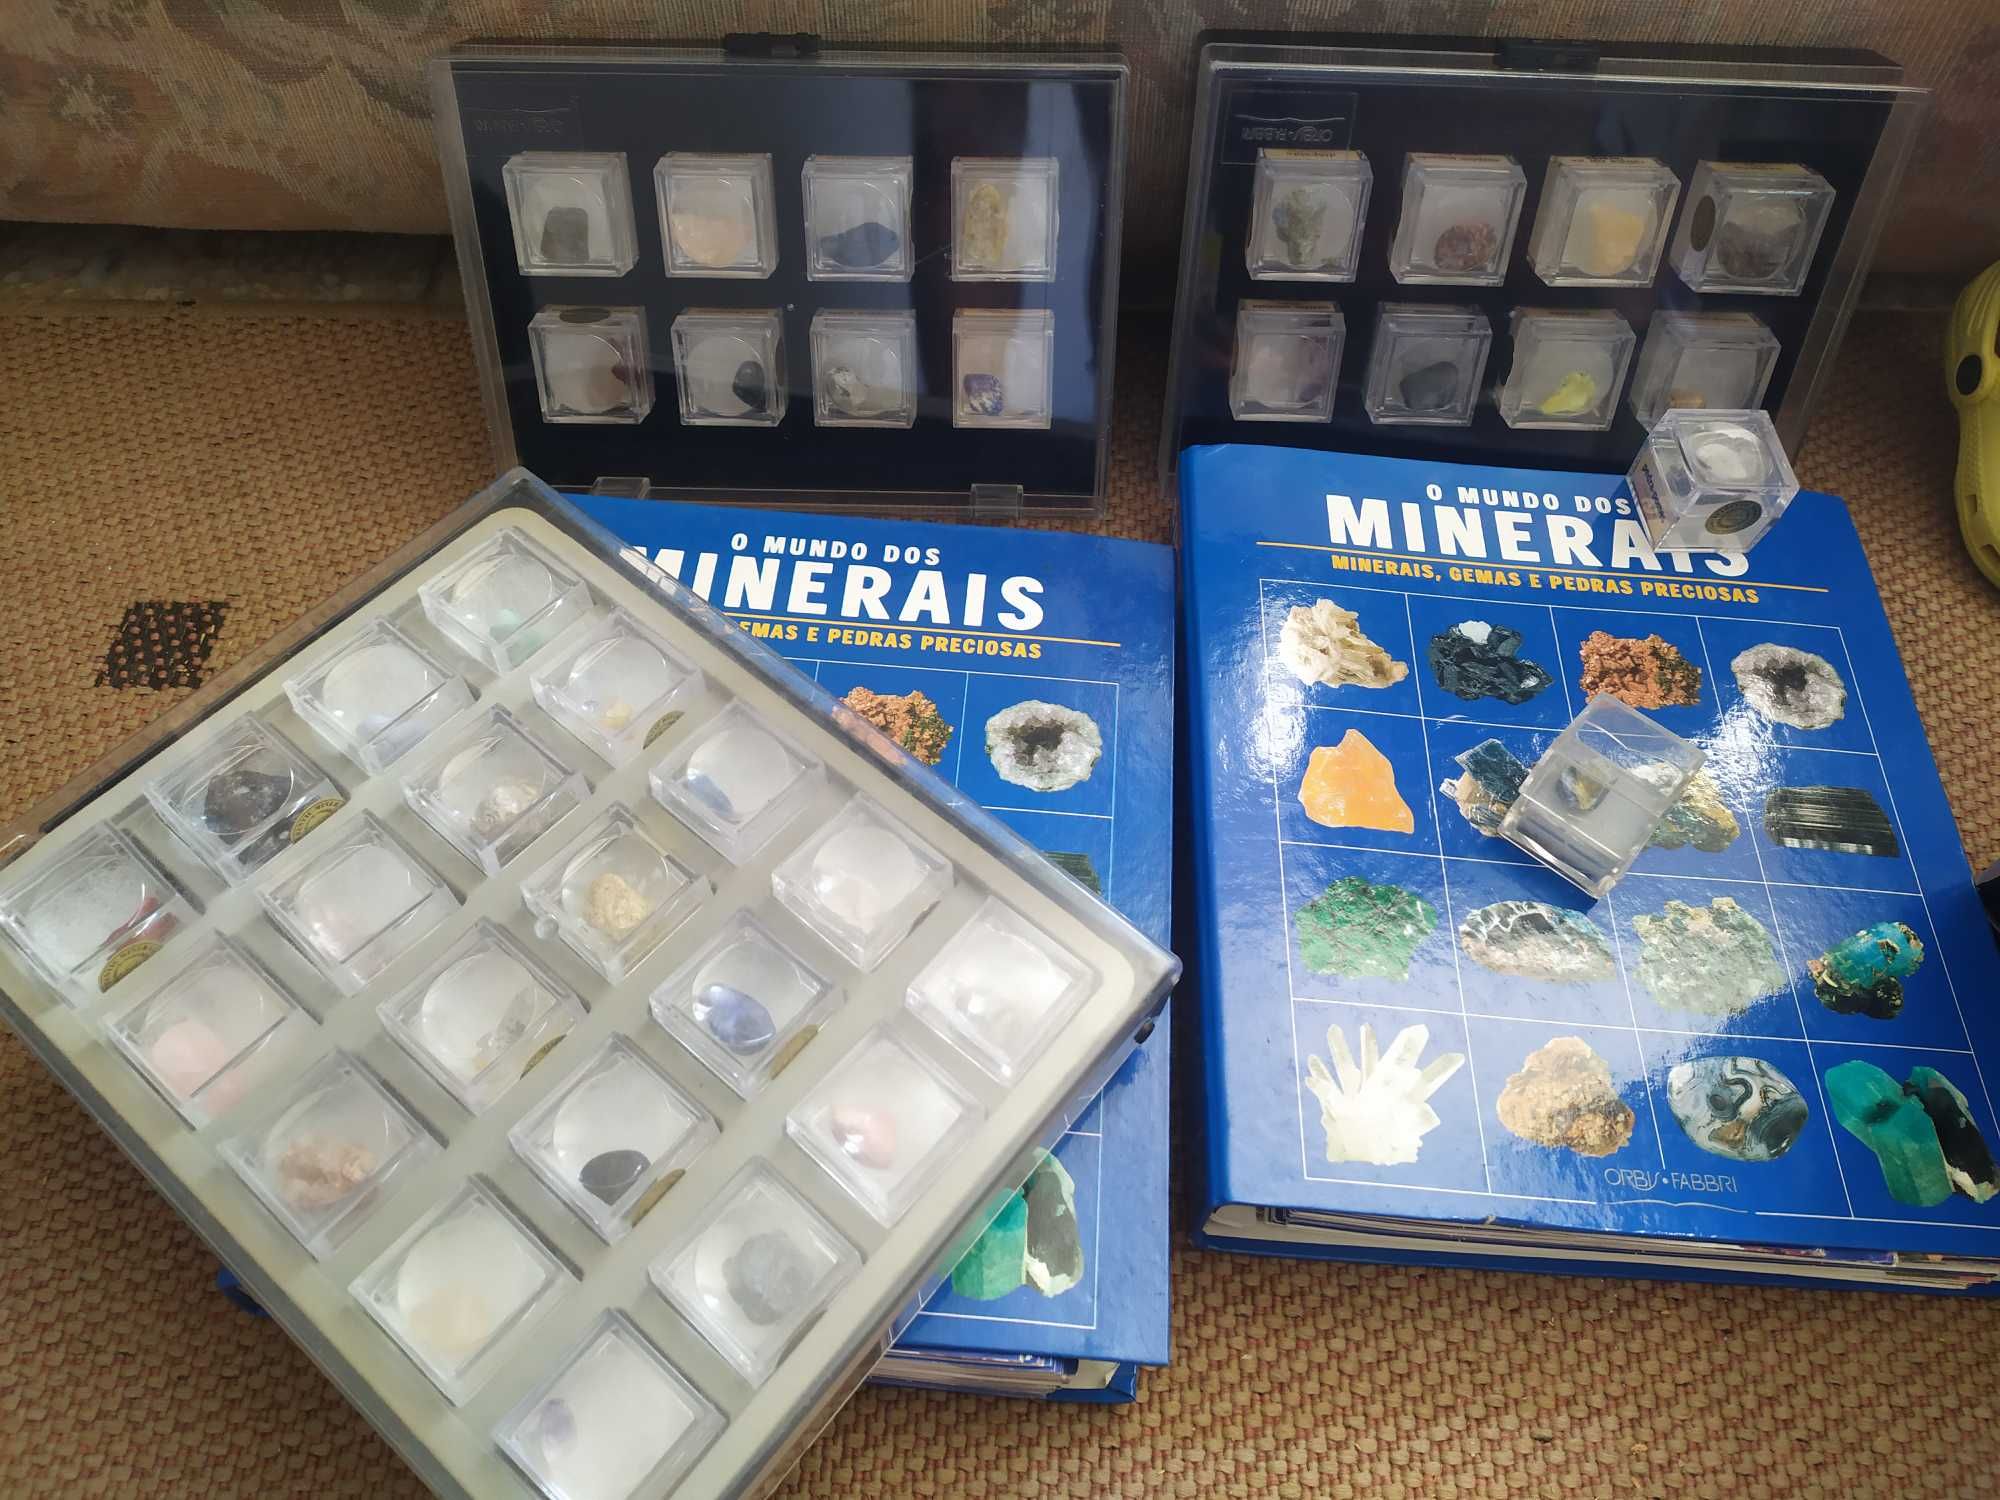 Minerais, Gemas e Pedras Preciosas